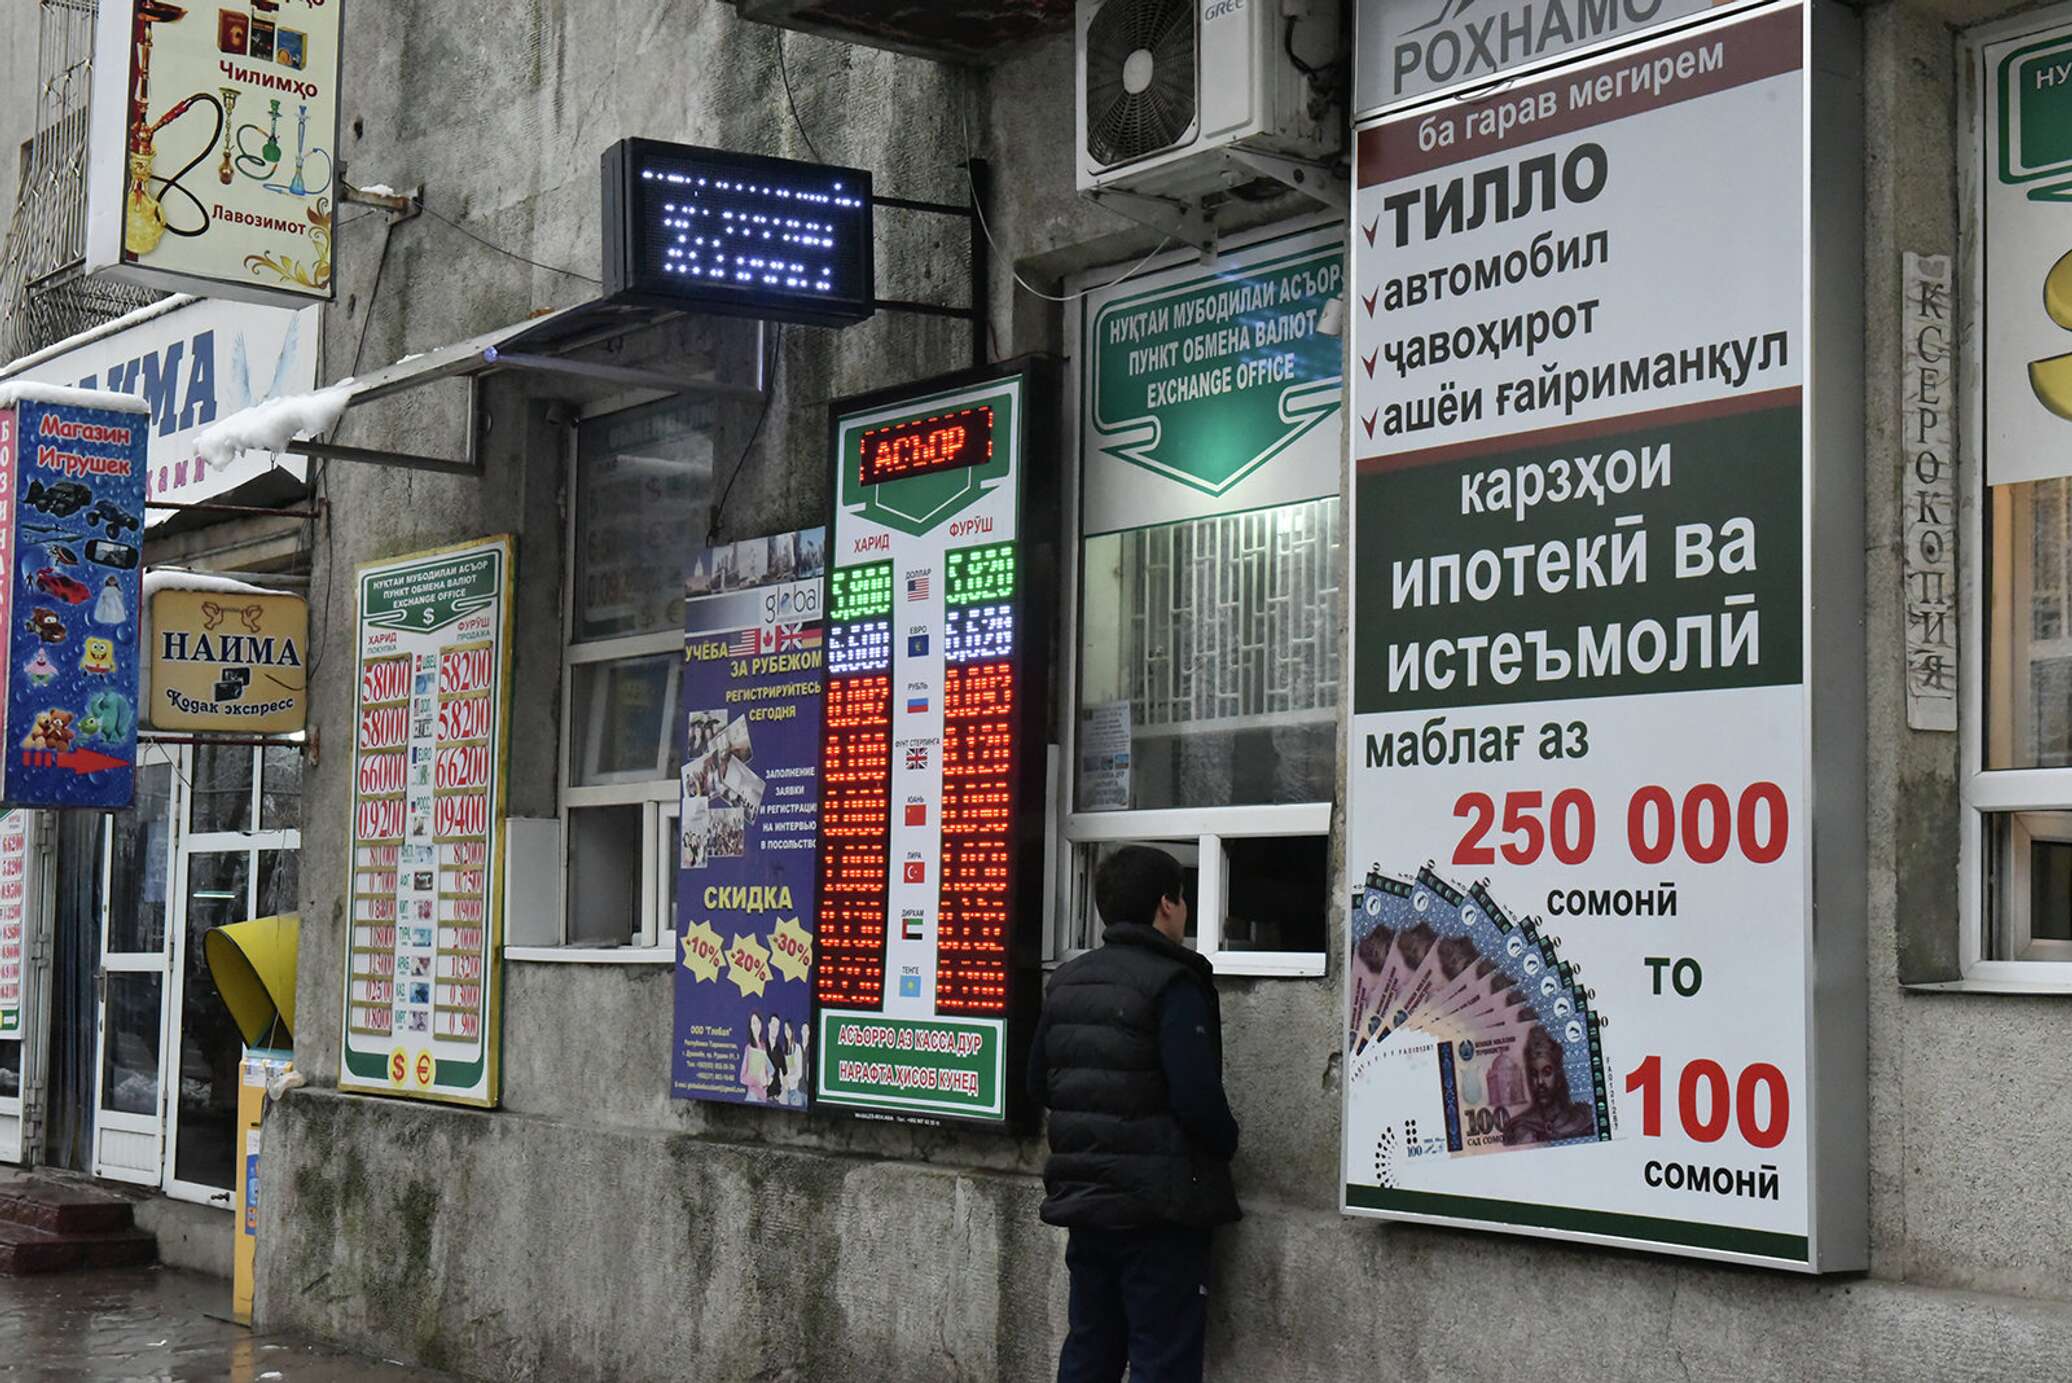 Курсы валют таджикистан на сегодня рубл сомони. Обмен валюты. Обменник валют. Курсы валют в Таджикистане. Обменные пункты в Таджикистане.